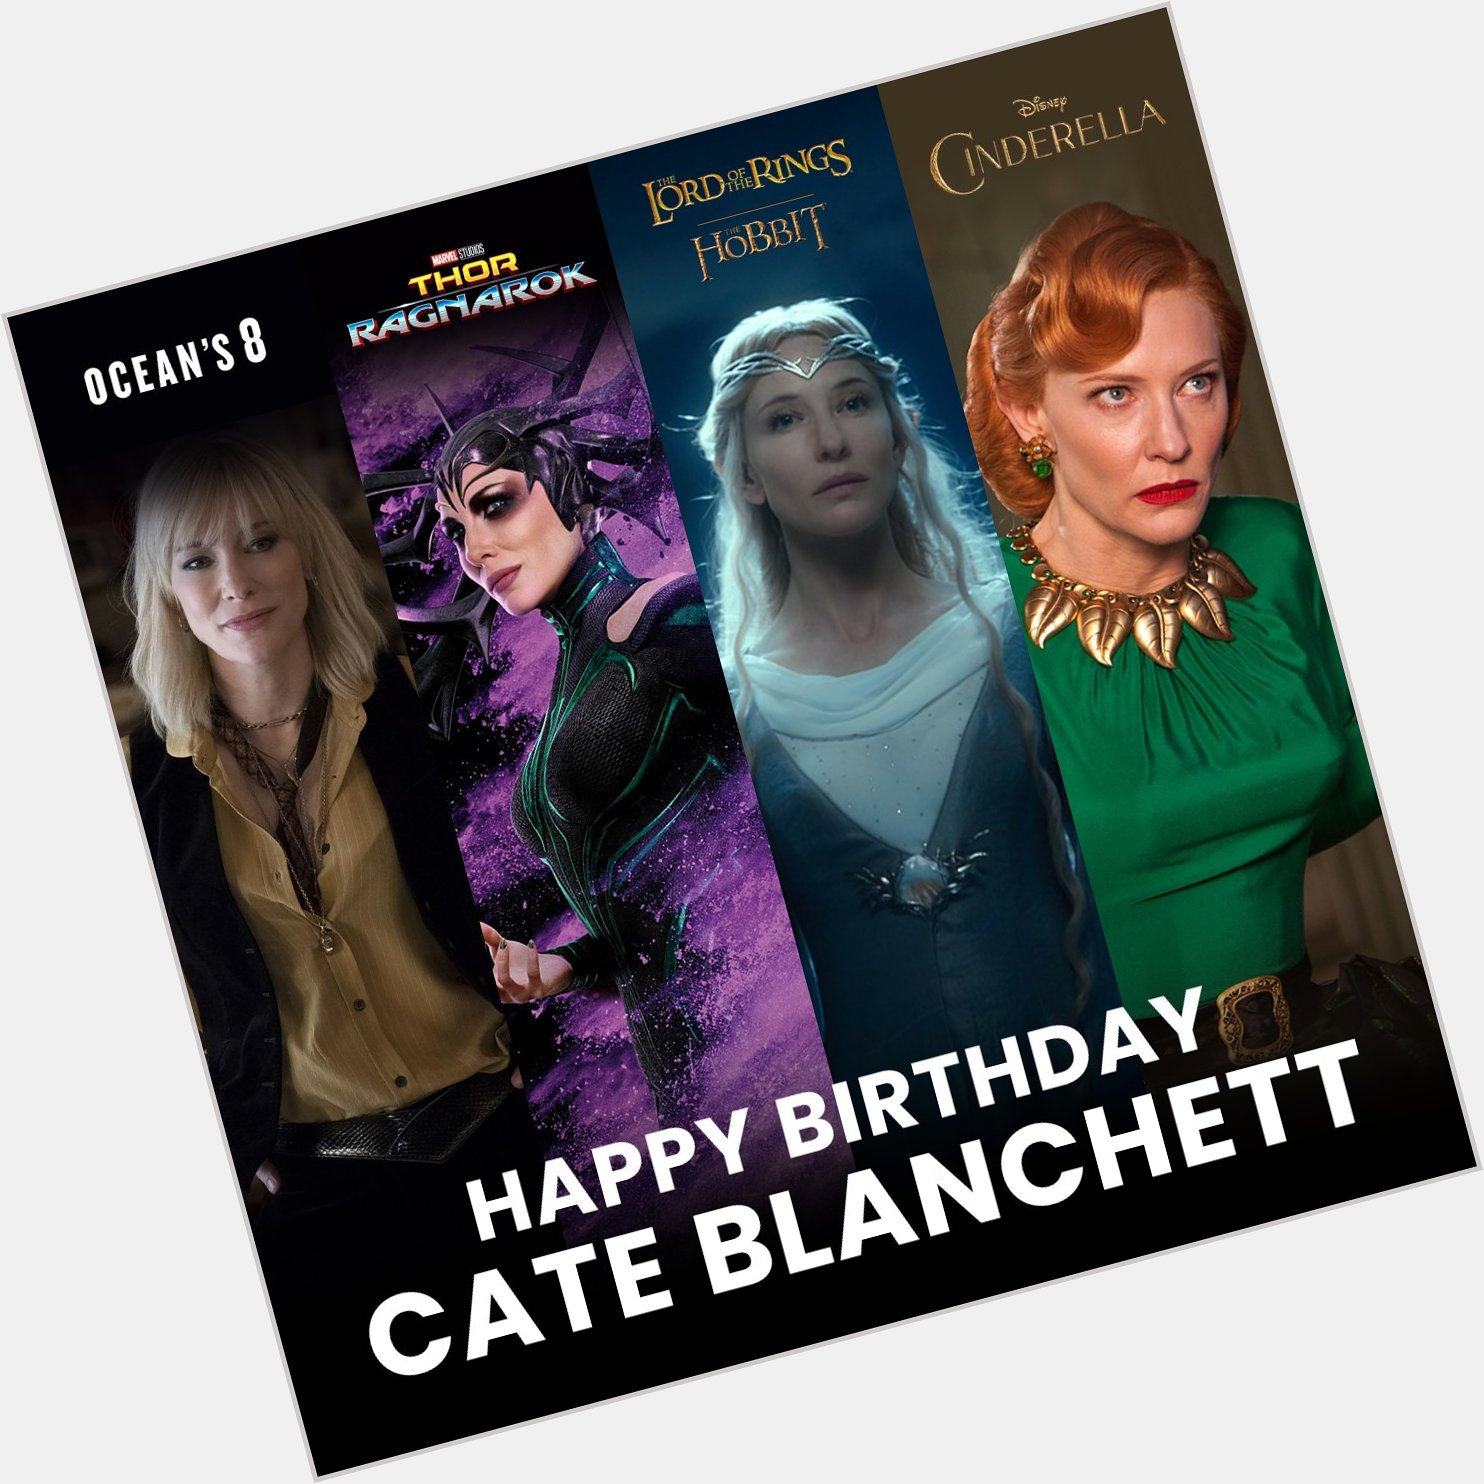 Happy Birthday to Cate Blanchett! What\s your favorite Cate Blanchett movie? 